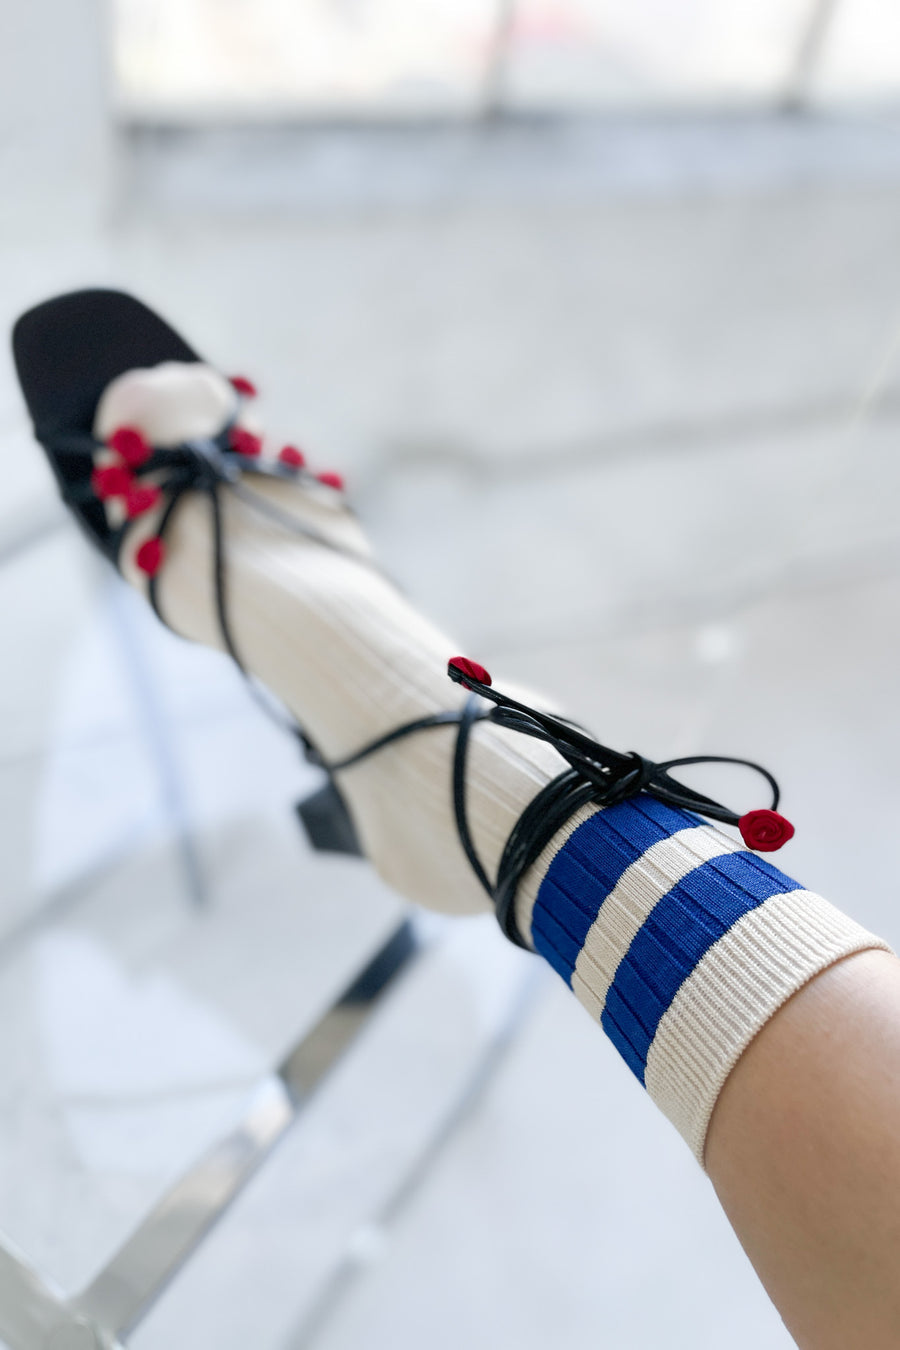 Her Socks Varsity - Azure